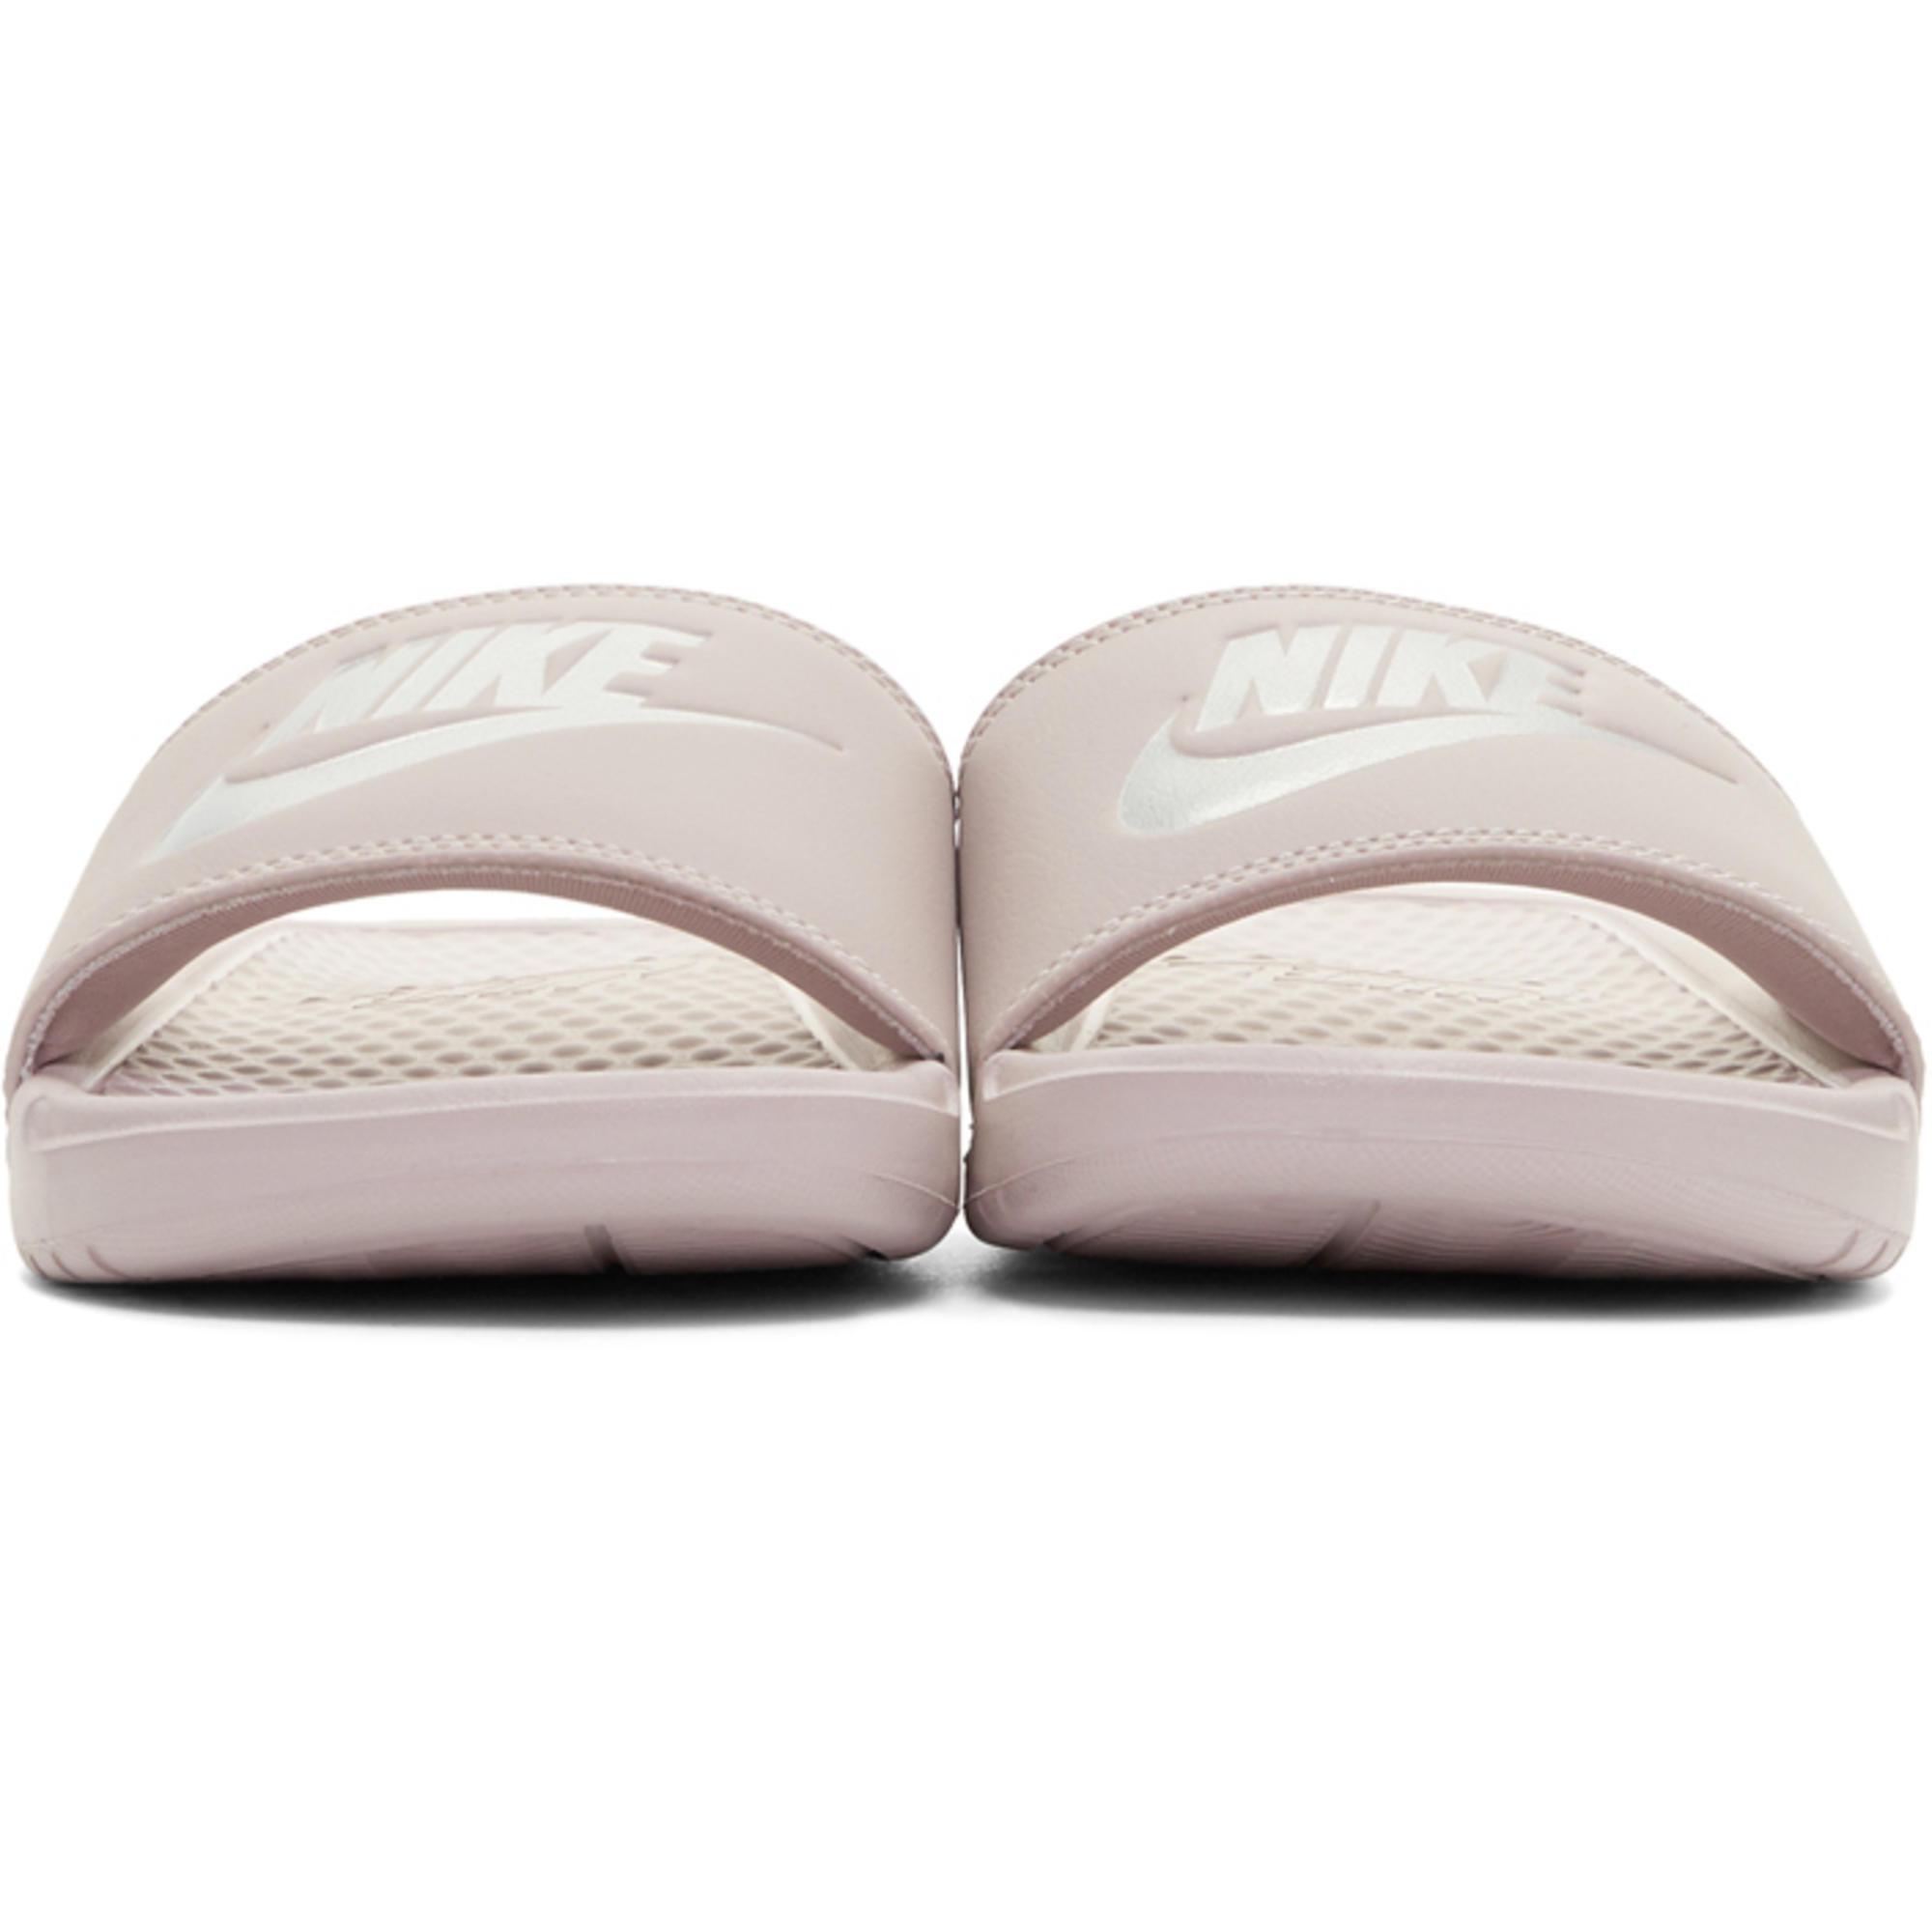 Nike Pink Benassi Slides | Lyst